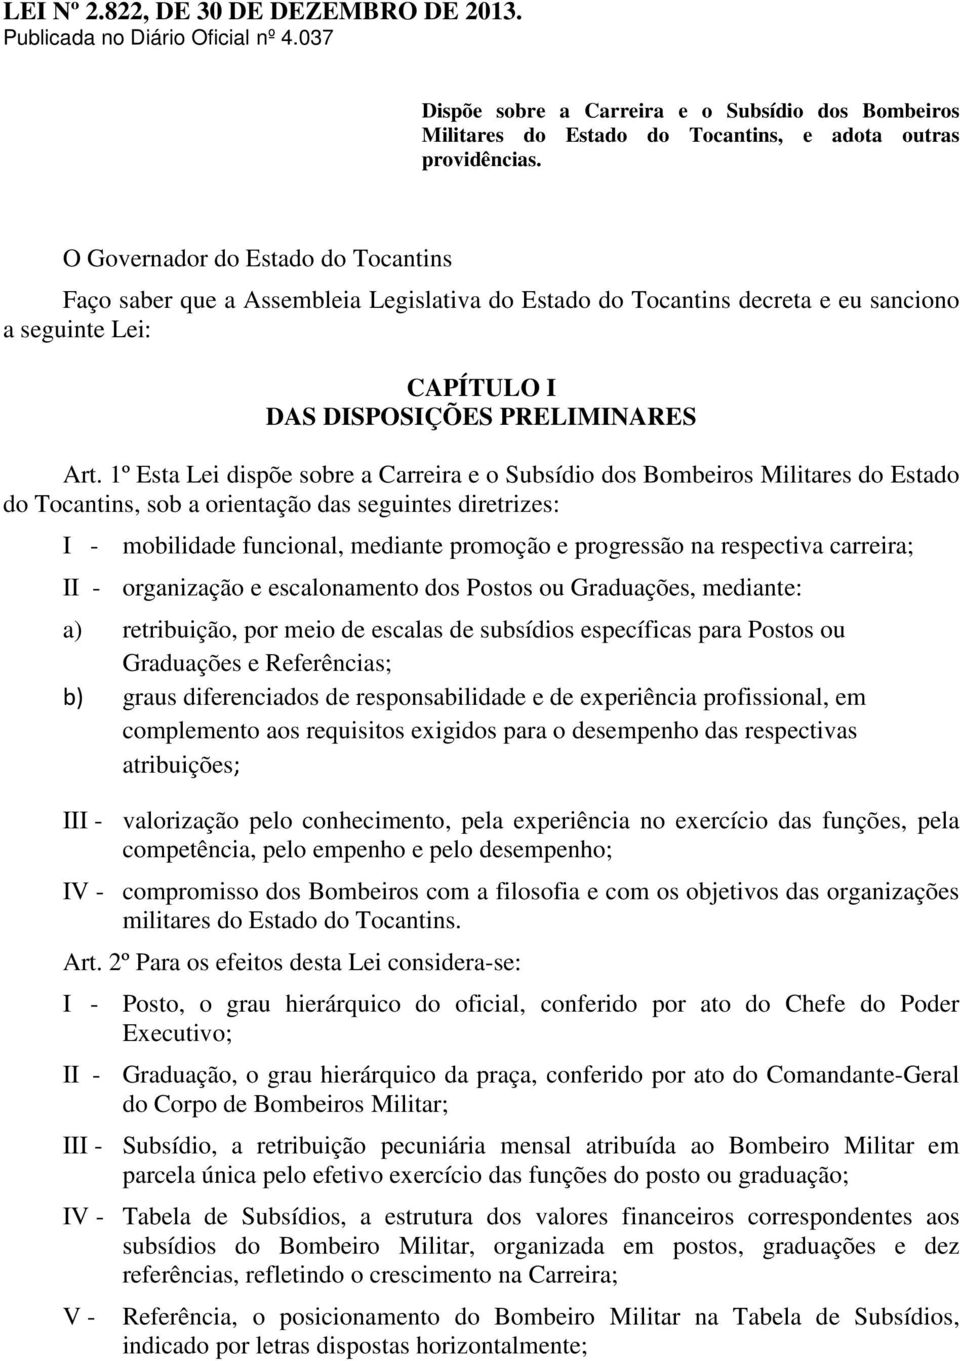 1º Esta Lei dispõe sobre a Carreira e o Subsídio dos Bombeiros Militares do Estado do Tocantins, sob a orientação das seguintes diretrizes: I - mobilidade funcional, mediante promoção e progressão na